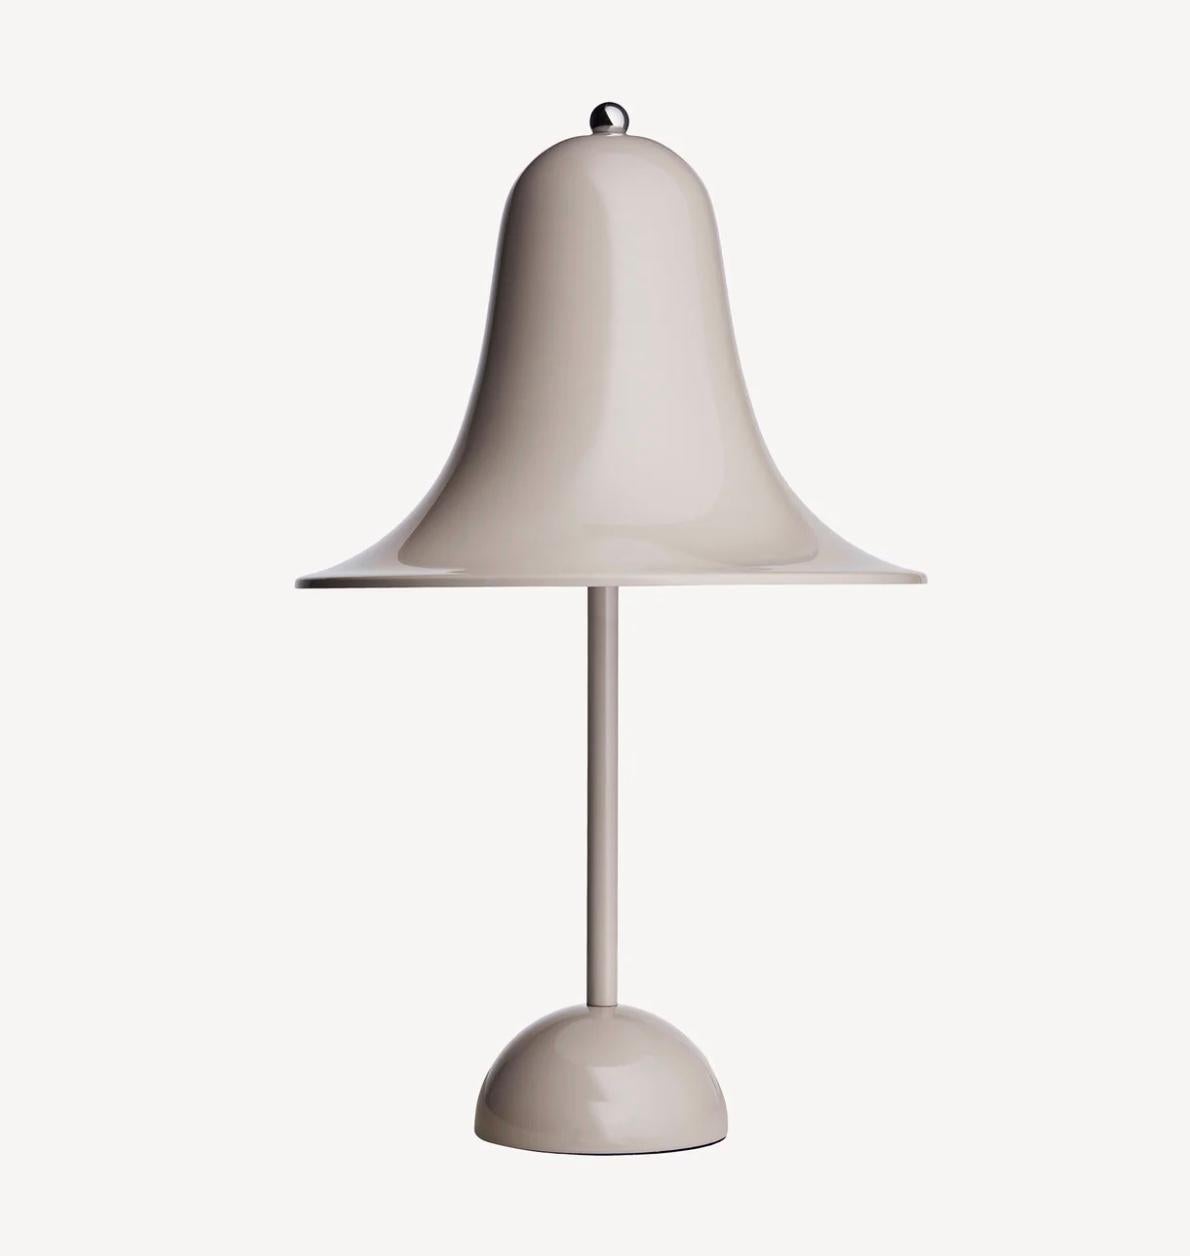 Verner Panton 'Pantop' Table Lamp in 'Terracotta' 1980 for Verpan For Sale 1